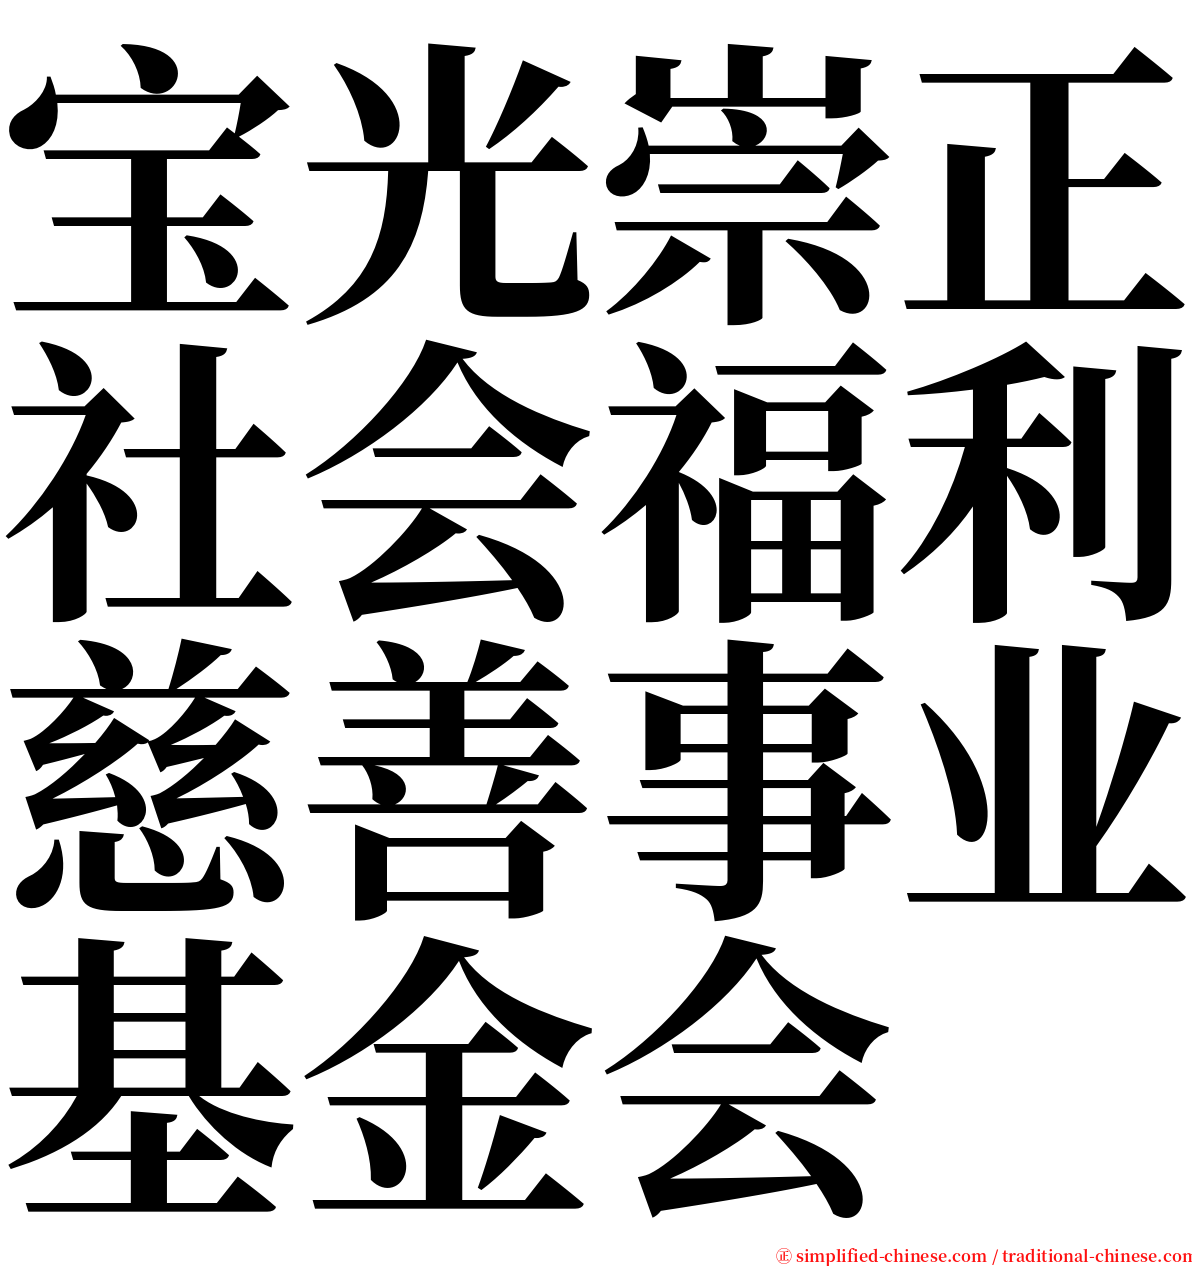 宝光崇正社会福利慈善事业基金会 serif font